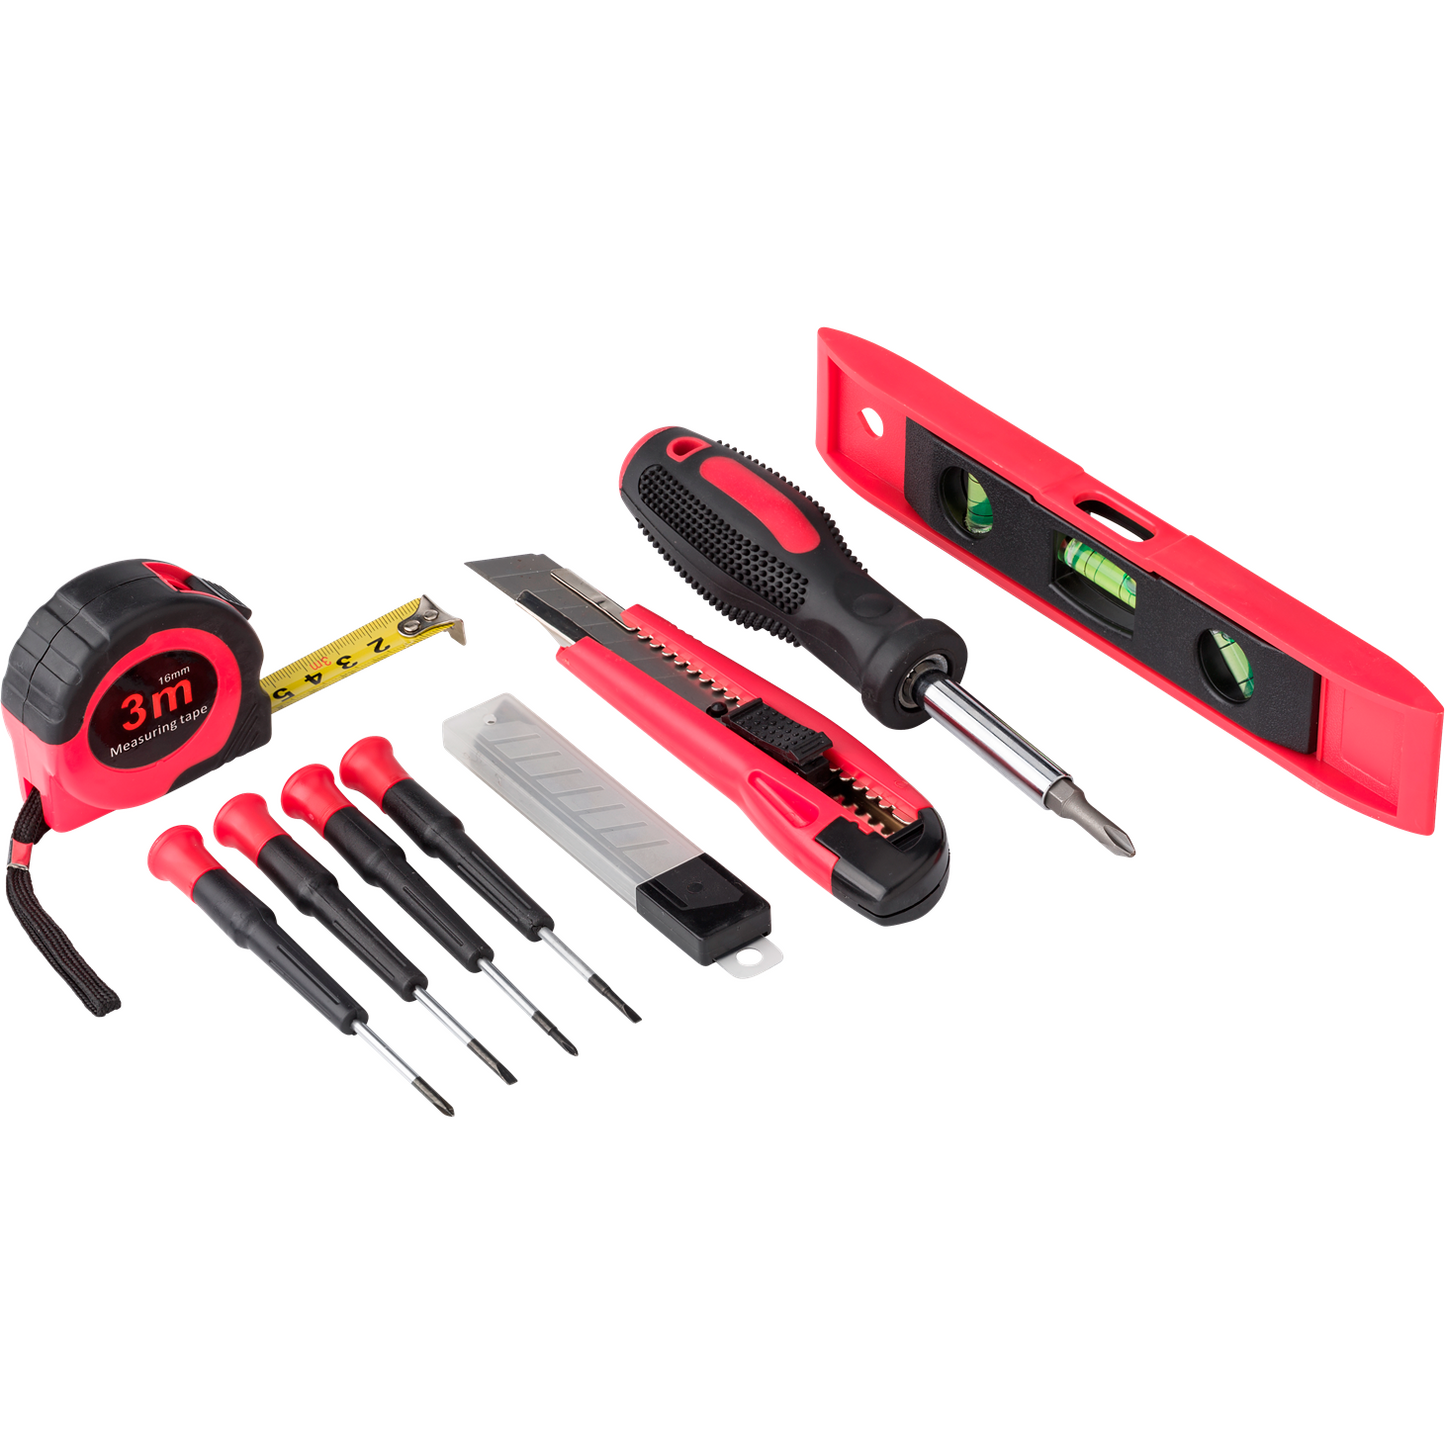 Ultimate Steel tool kit    